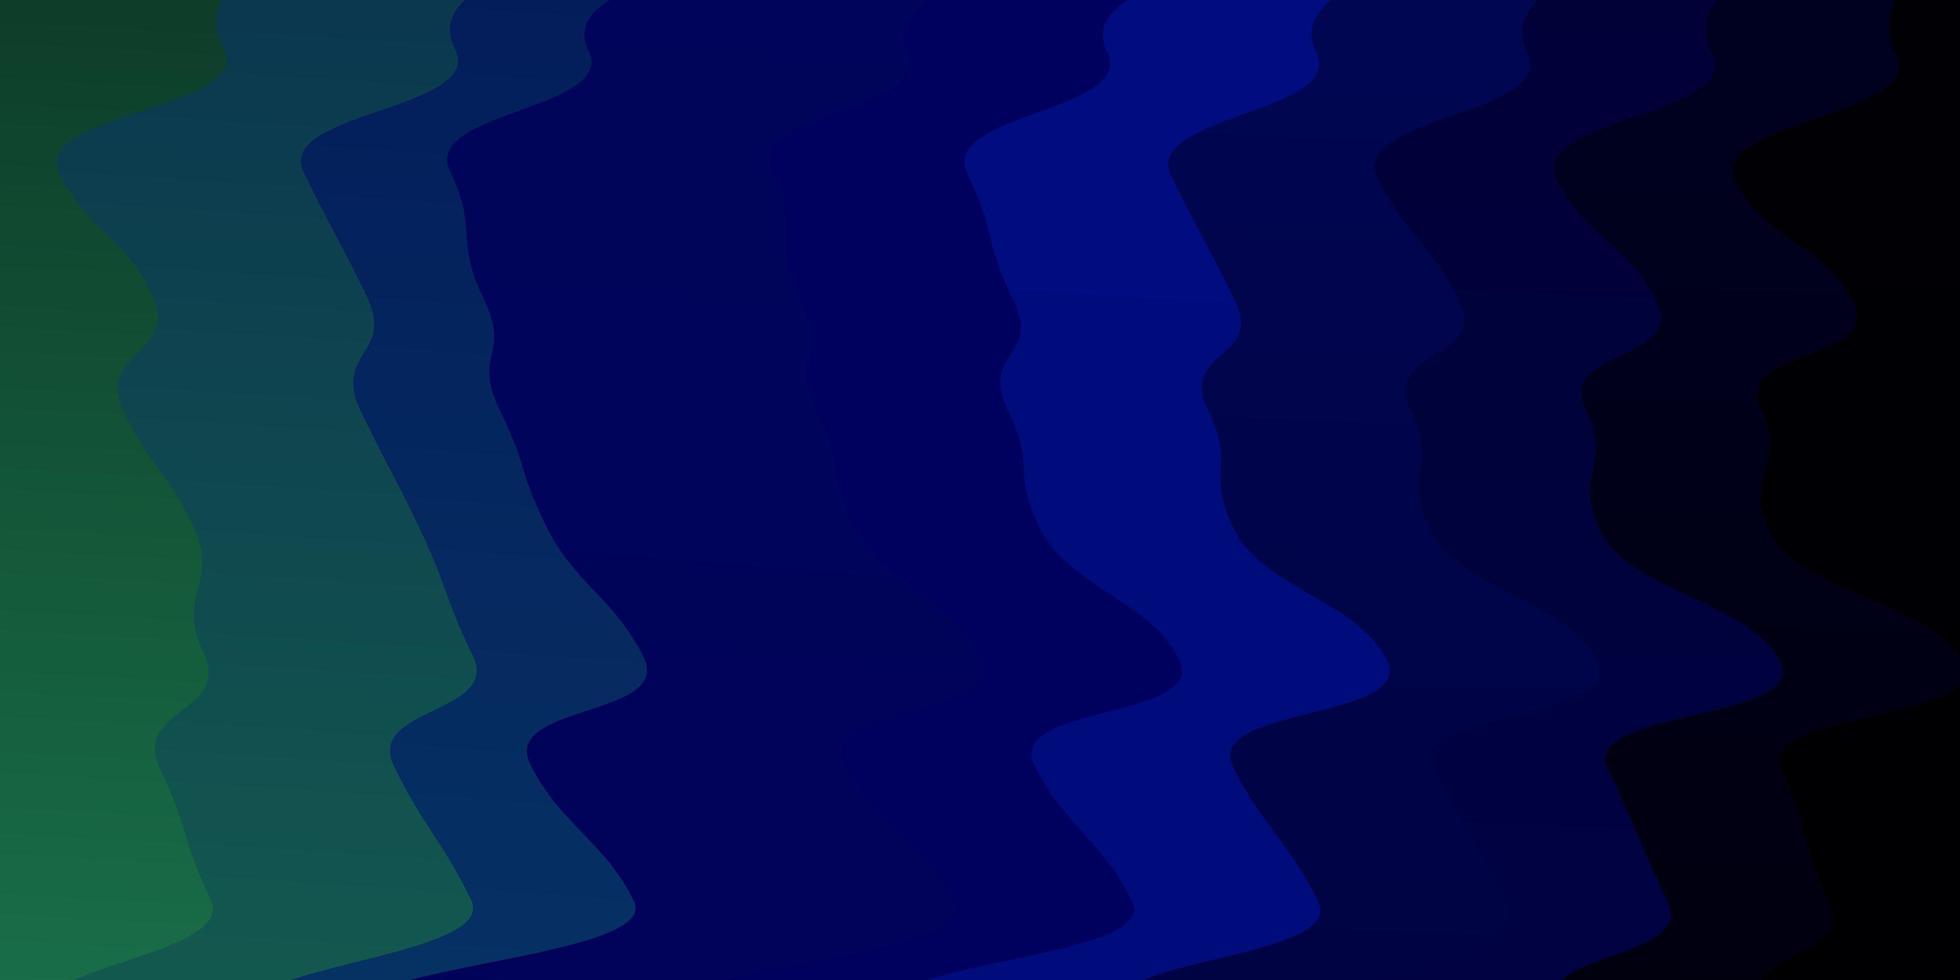 layout de vetor verde azul escuro com ilustração de linhas irônicas em estilo abstrato com gradiente curvo melhor design para seus banners de cartazes